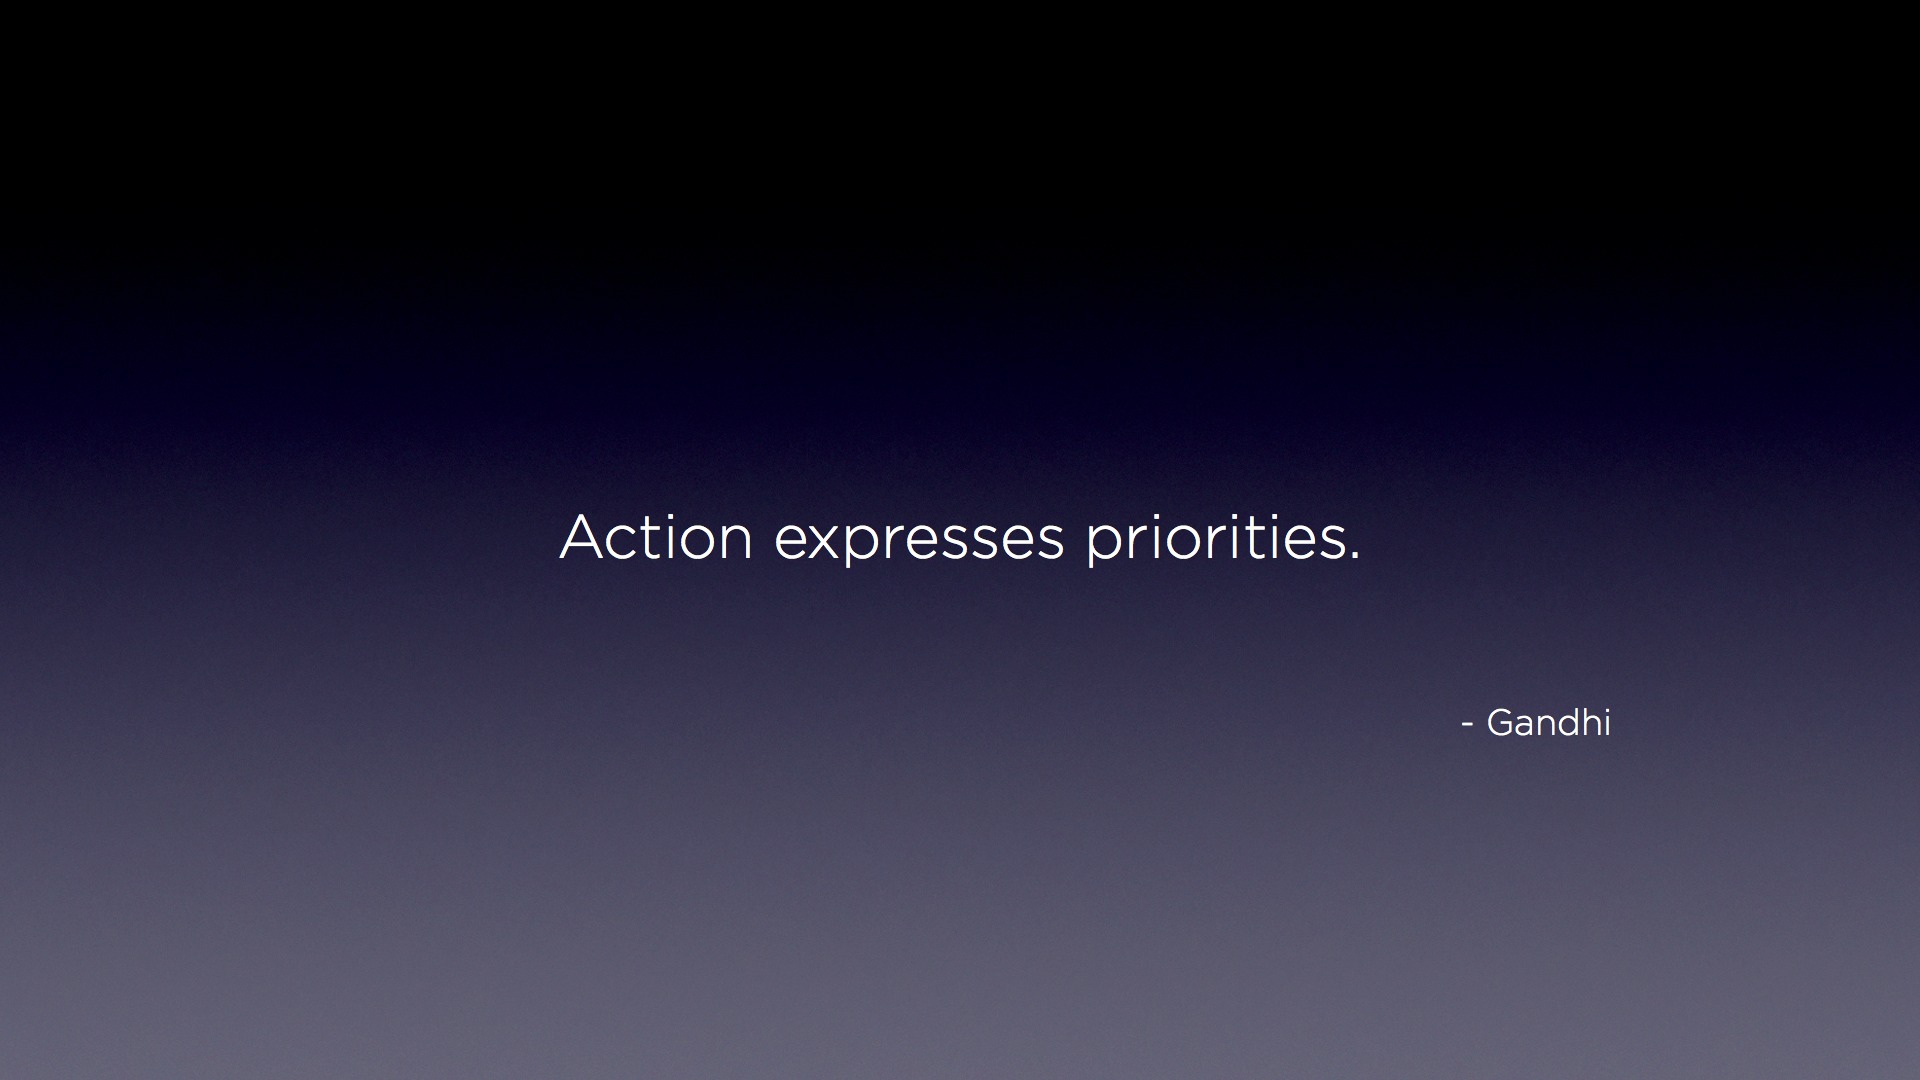 "Action expresses priorities" - Gandhi Desktop Wallpaper Quote